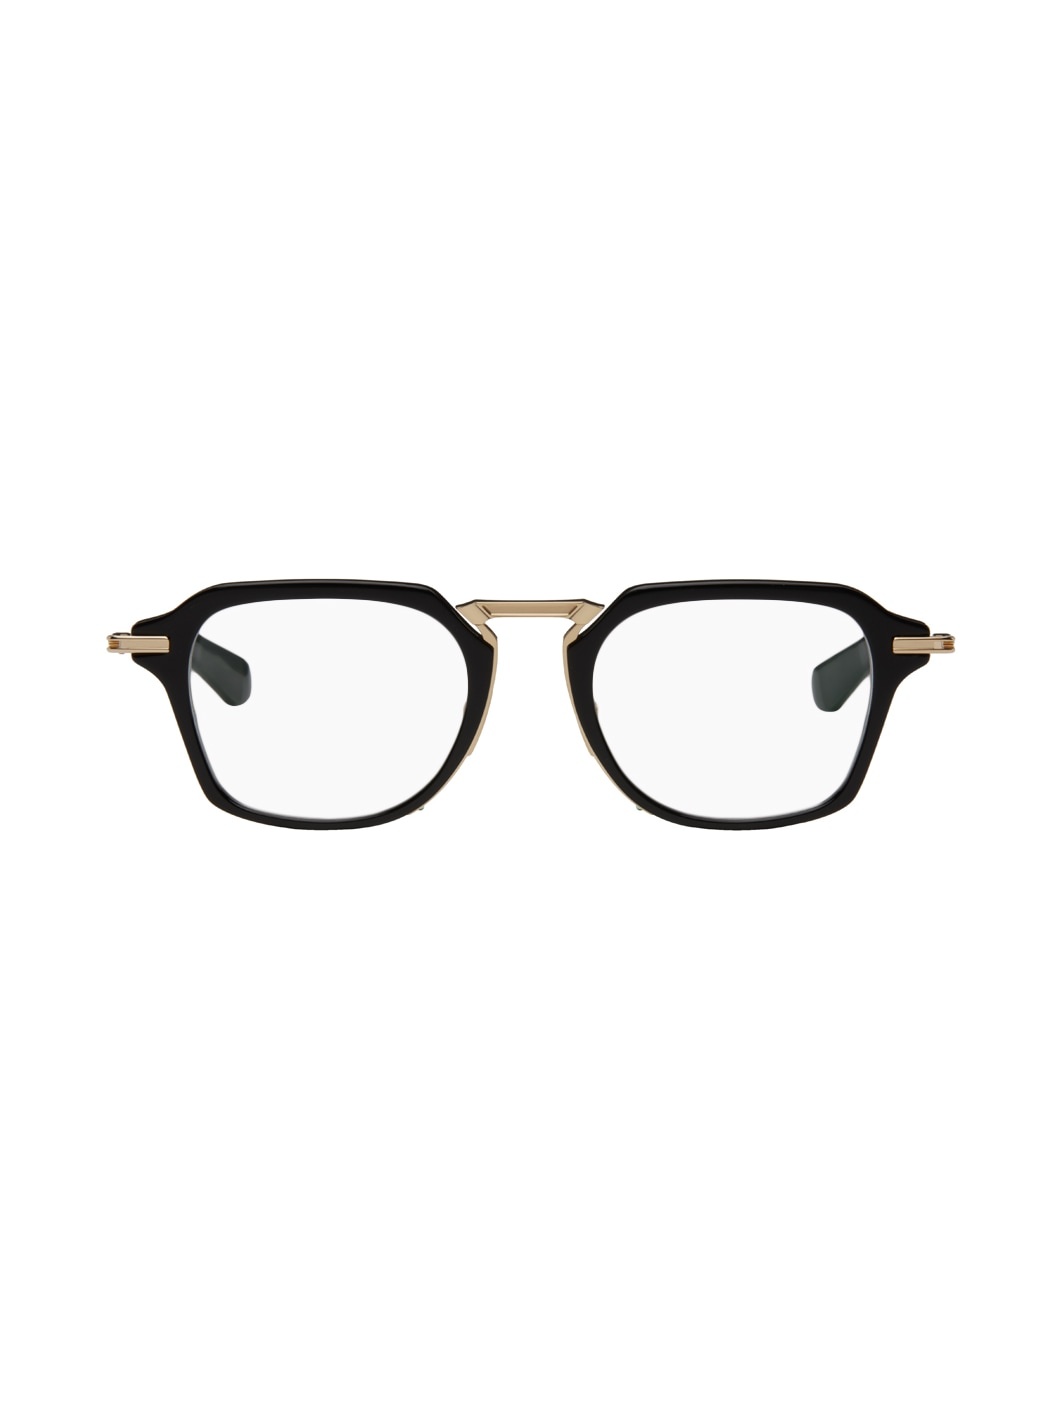 Black & Gold Aegeus Glasses - 1